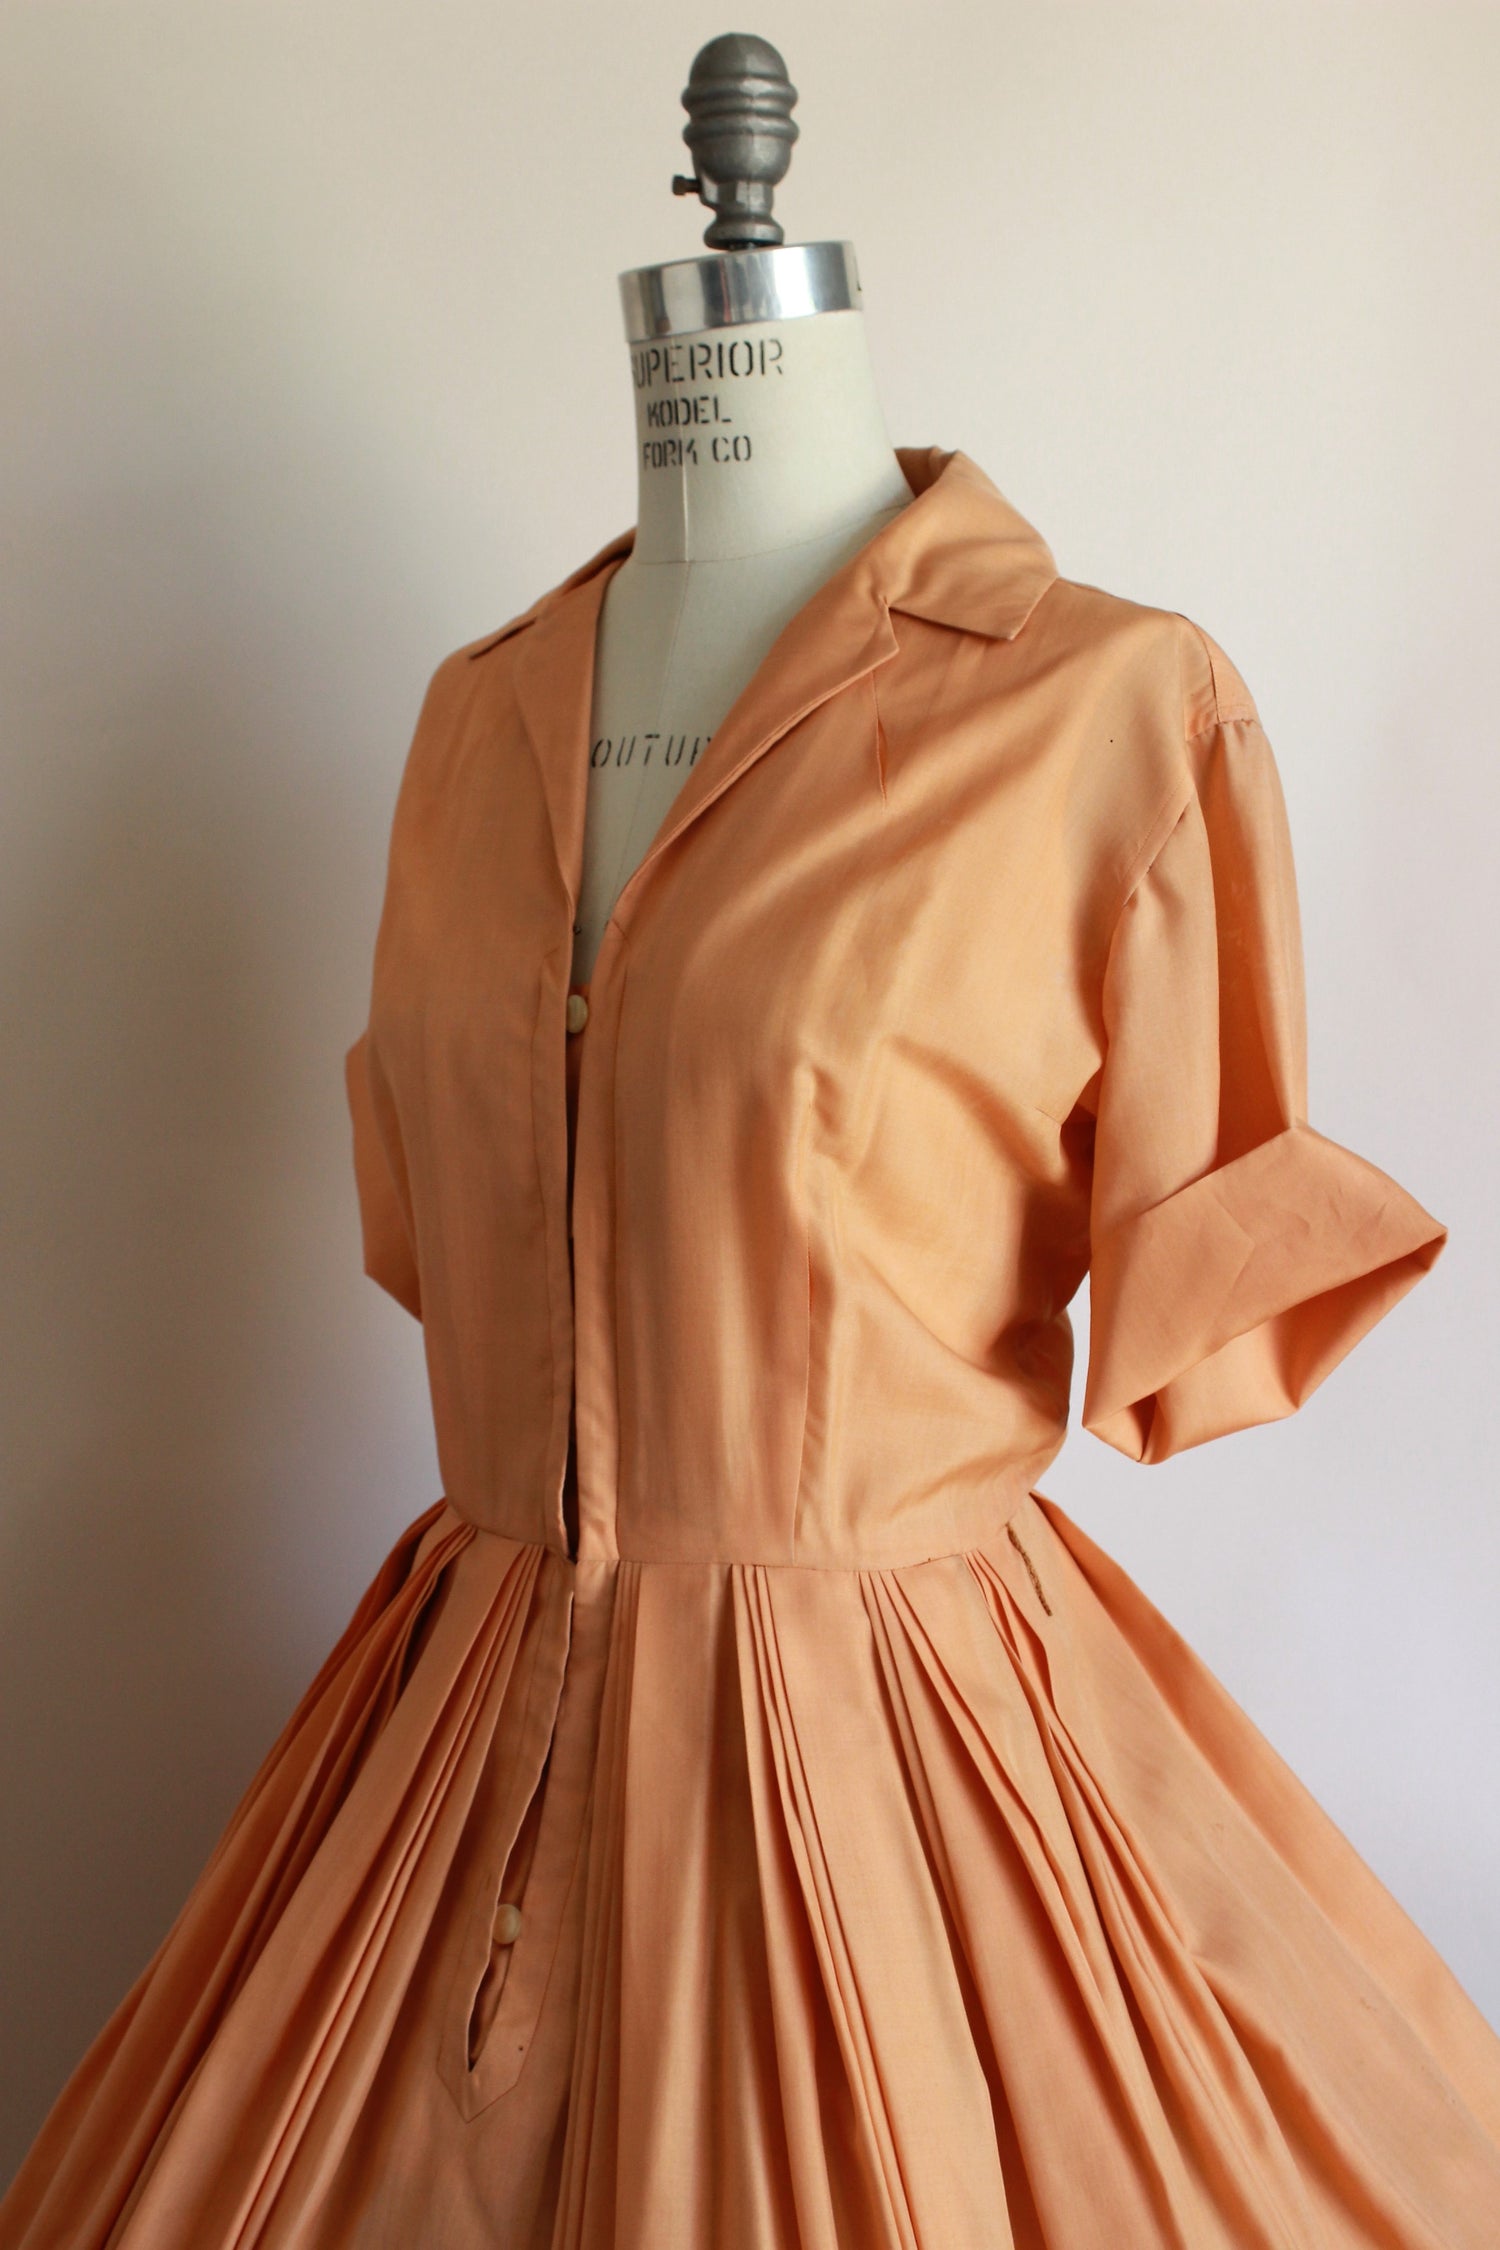 Vintage 1960s Orange Shirtwaist Dress by I Magnin